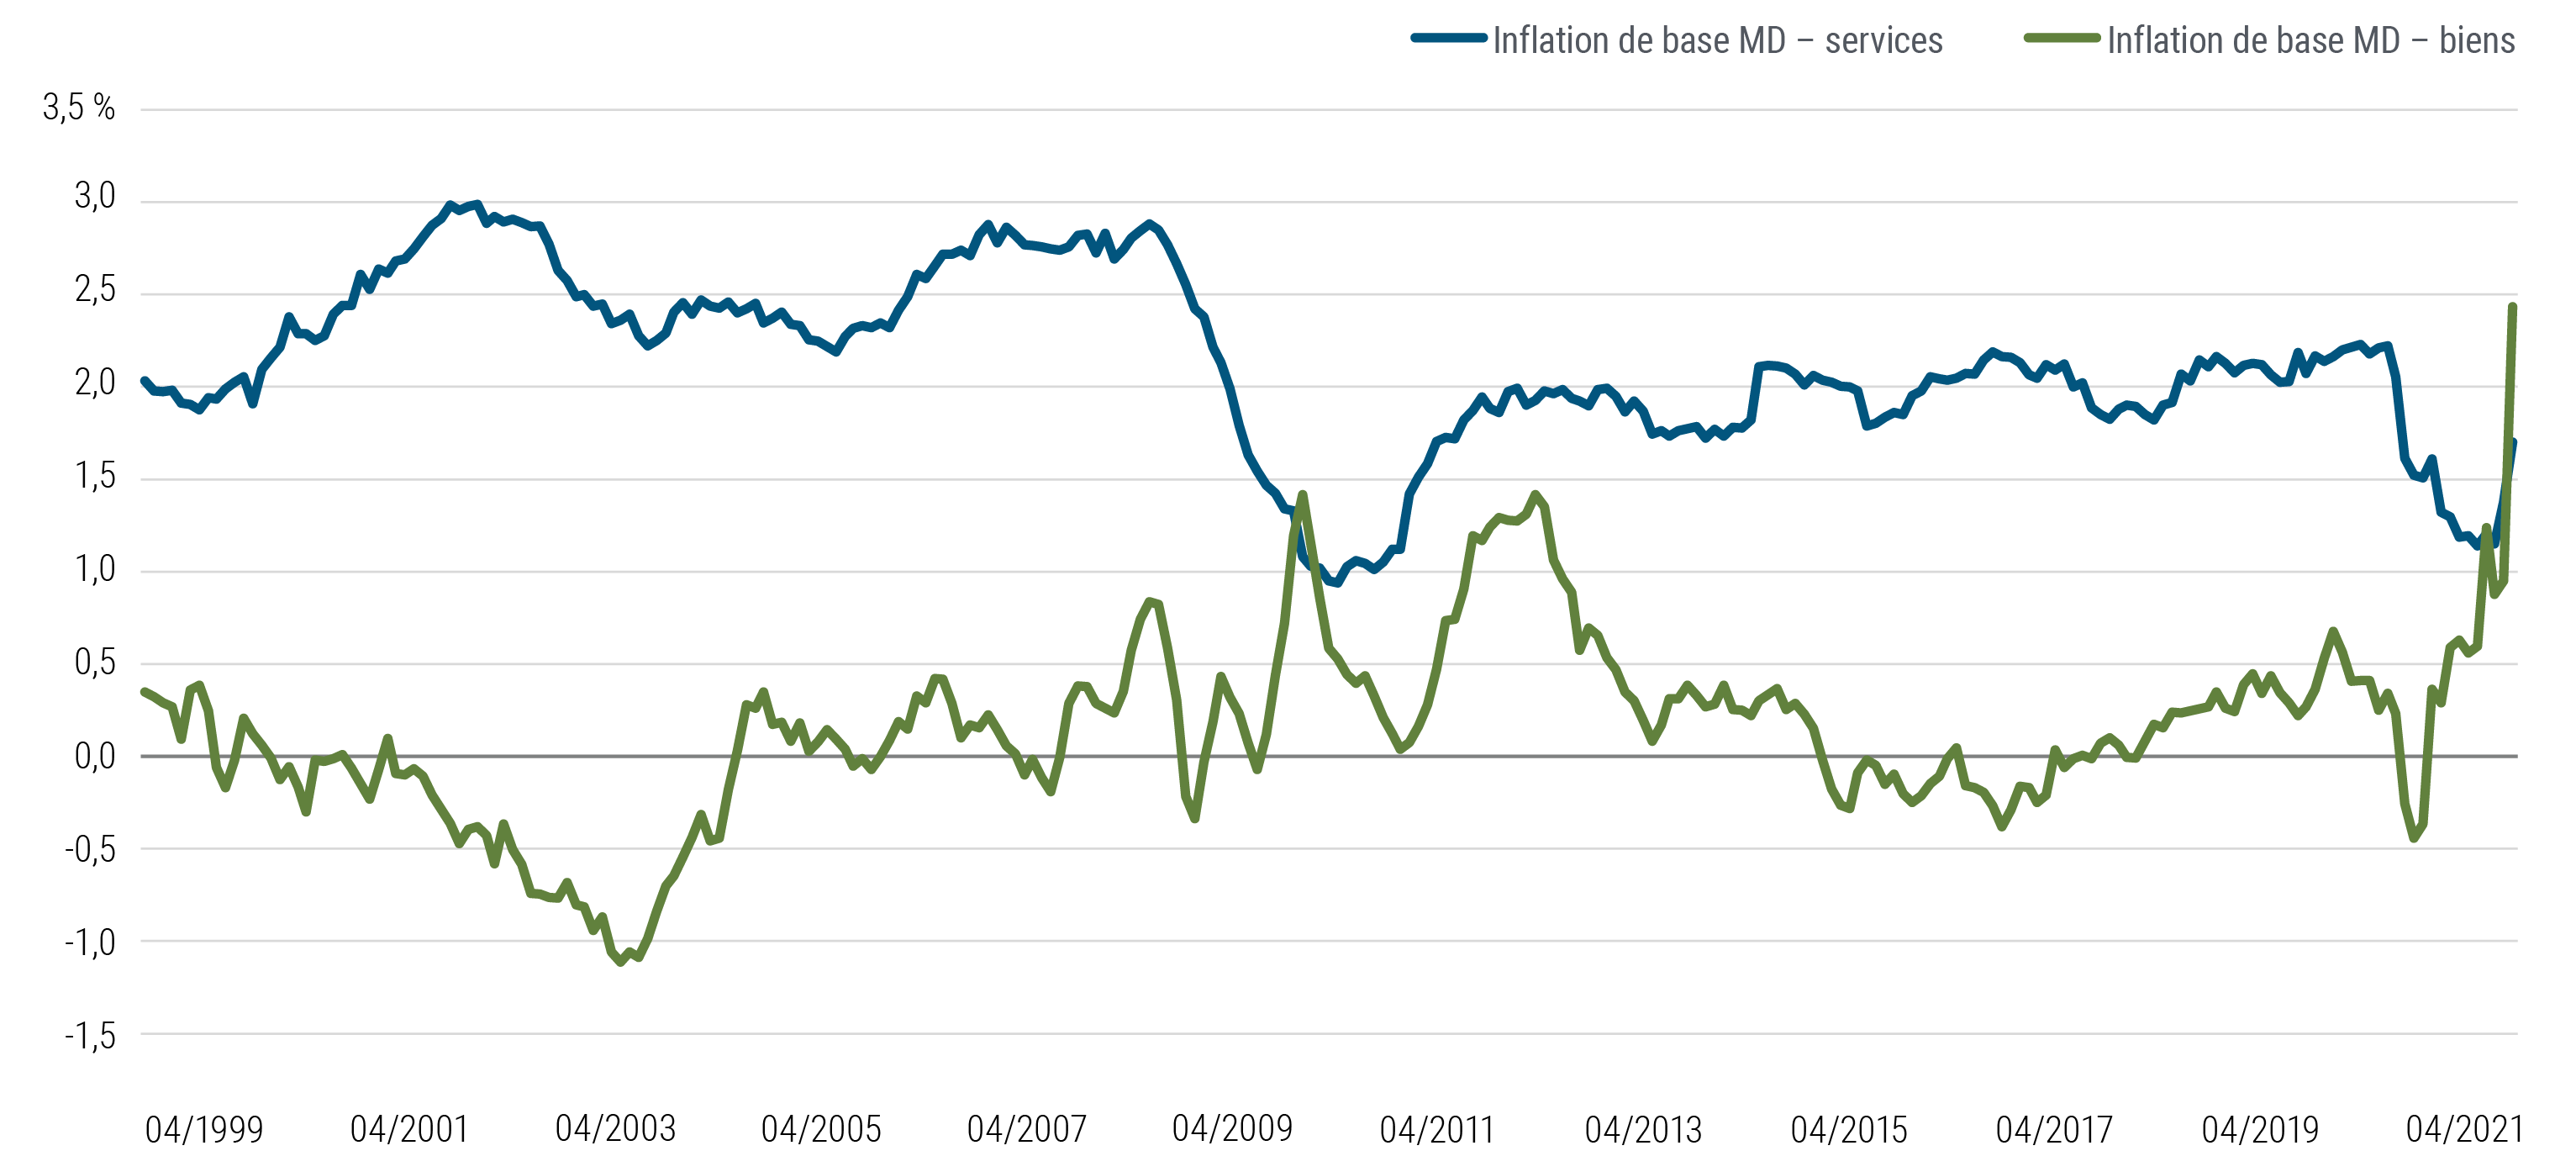 Le graphique 4 illustre en deux courbes pondérées en fonction du PIB le cumul de l'inflation de base du prix des services et des biens respectivement, au Canada, dans la zone euro, au Japon, au Royaume-Uni et aux États-Unis d'avril 1999 à avril 2021. À l’exception d'un court épisode survenu début 2010, les prix de base des services ont toujours augmenté plus vite que ceux des biens, mais la tendance s’est inversée à partir de début 2021 à cause des perturbations d'après-pandémie et de l'évolution de la demande.